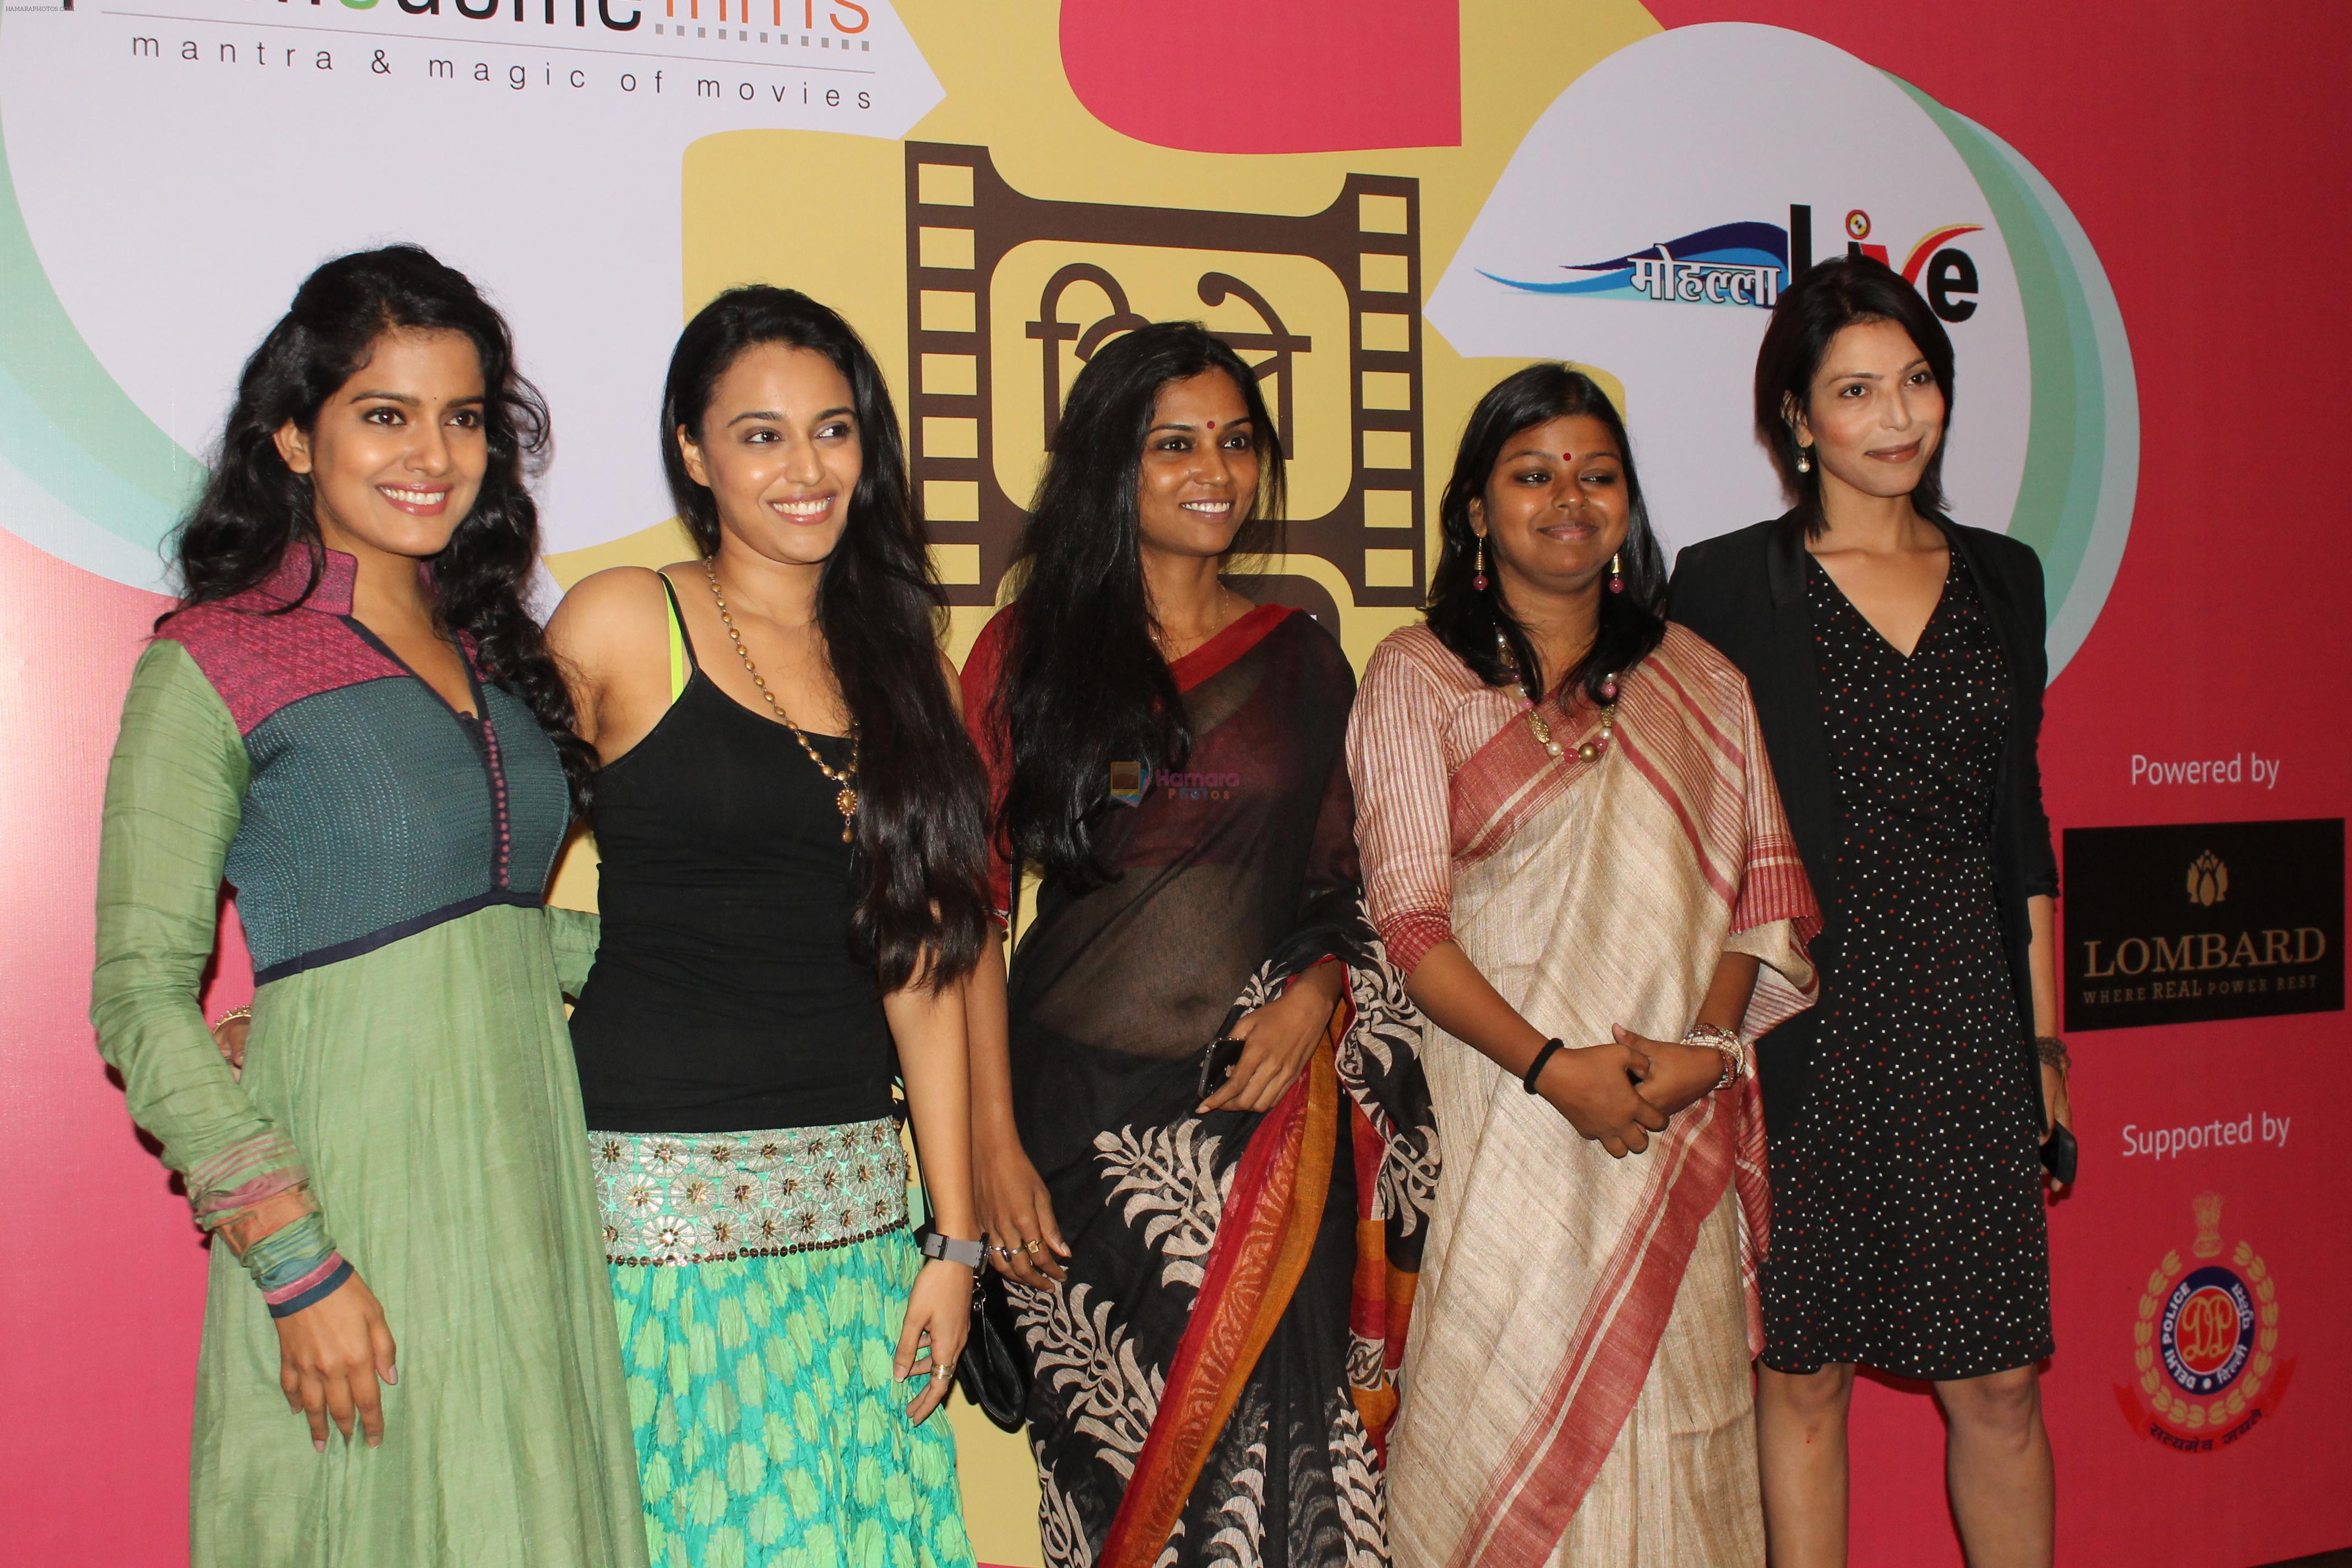 Swara Bhaskar, Usha Jadhav, Vishakha Singh, Shilpa Shukla and Vibhavari  atThe Cine Behastalab conference